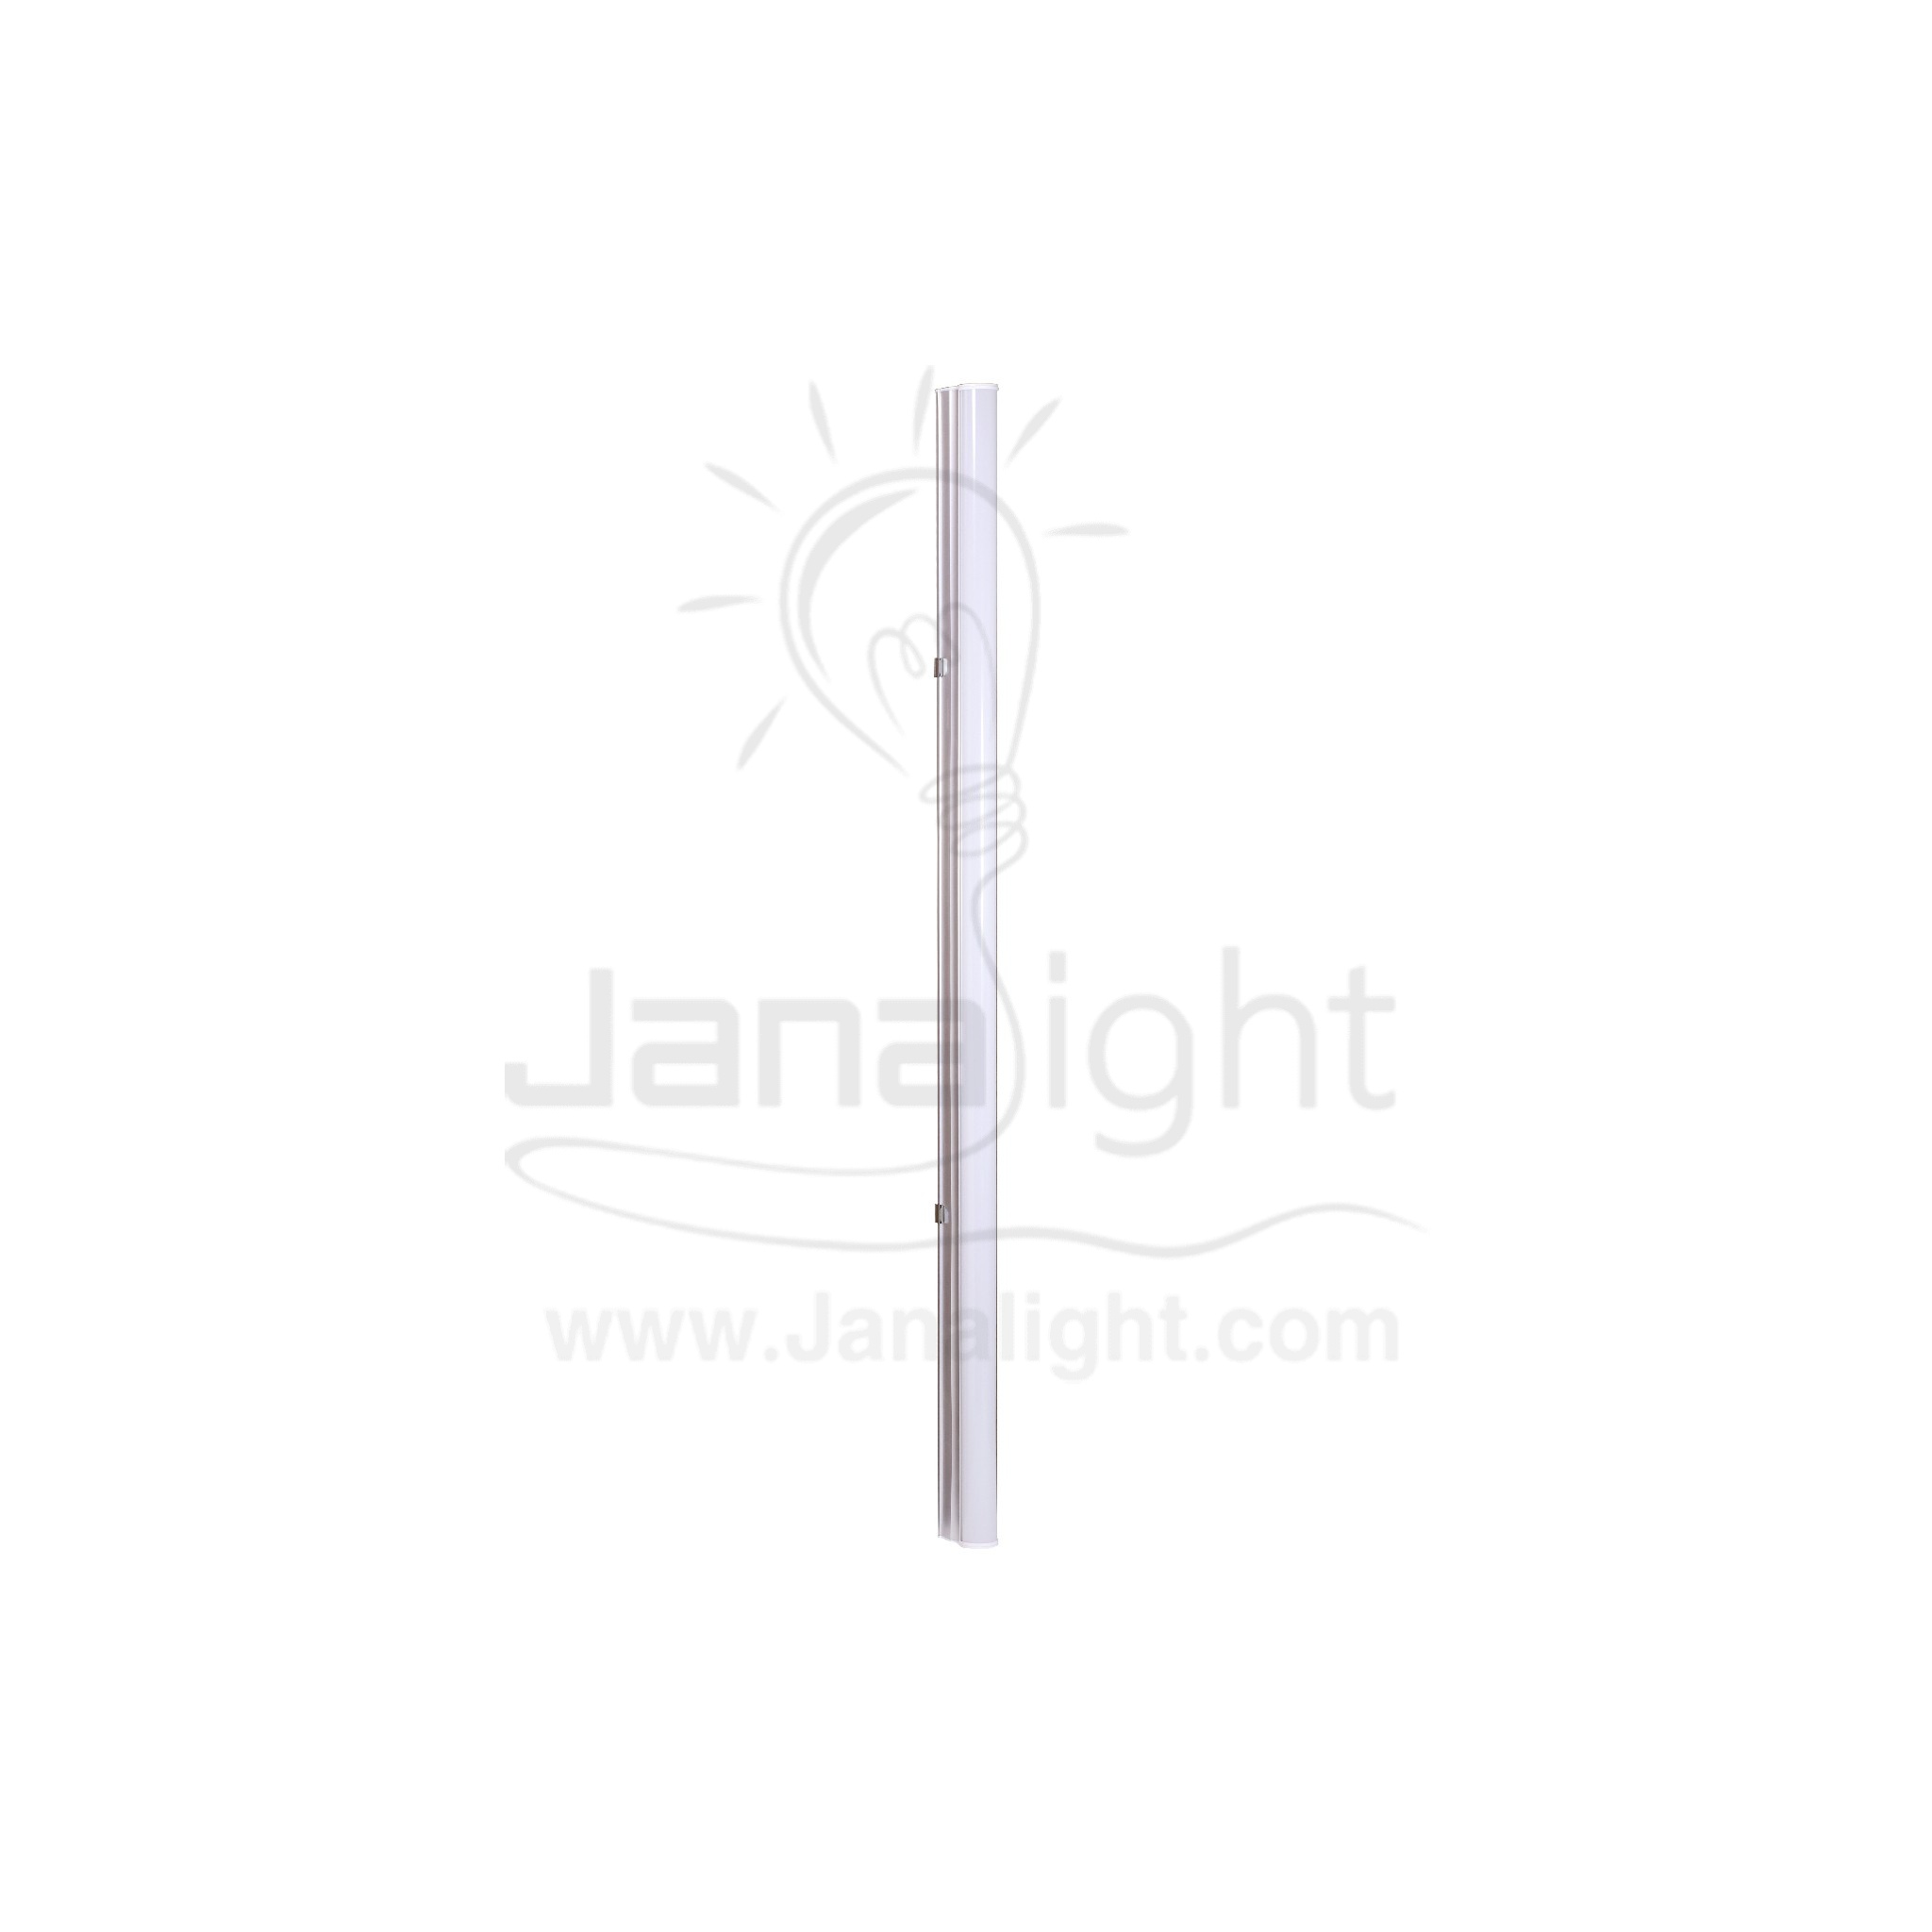 كشاف لد تي فايف 60 سم 9 وات وورم جنى لايت T5 led lamp rectangle tube light 60cm 9w warm Janalight 10322119(1)